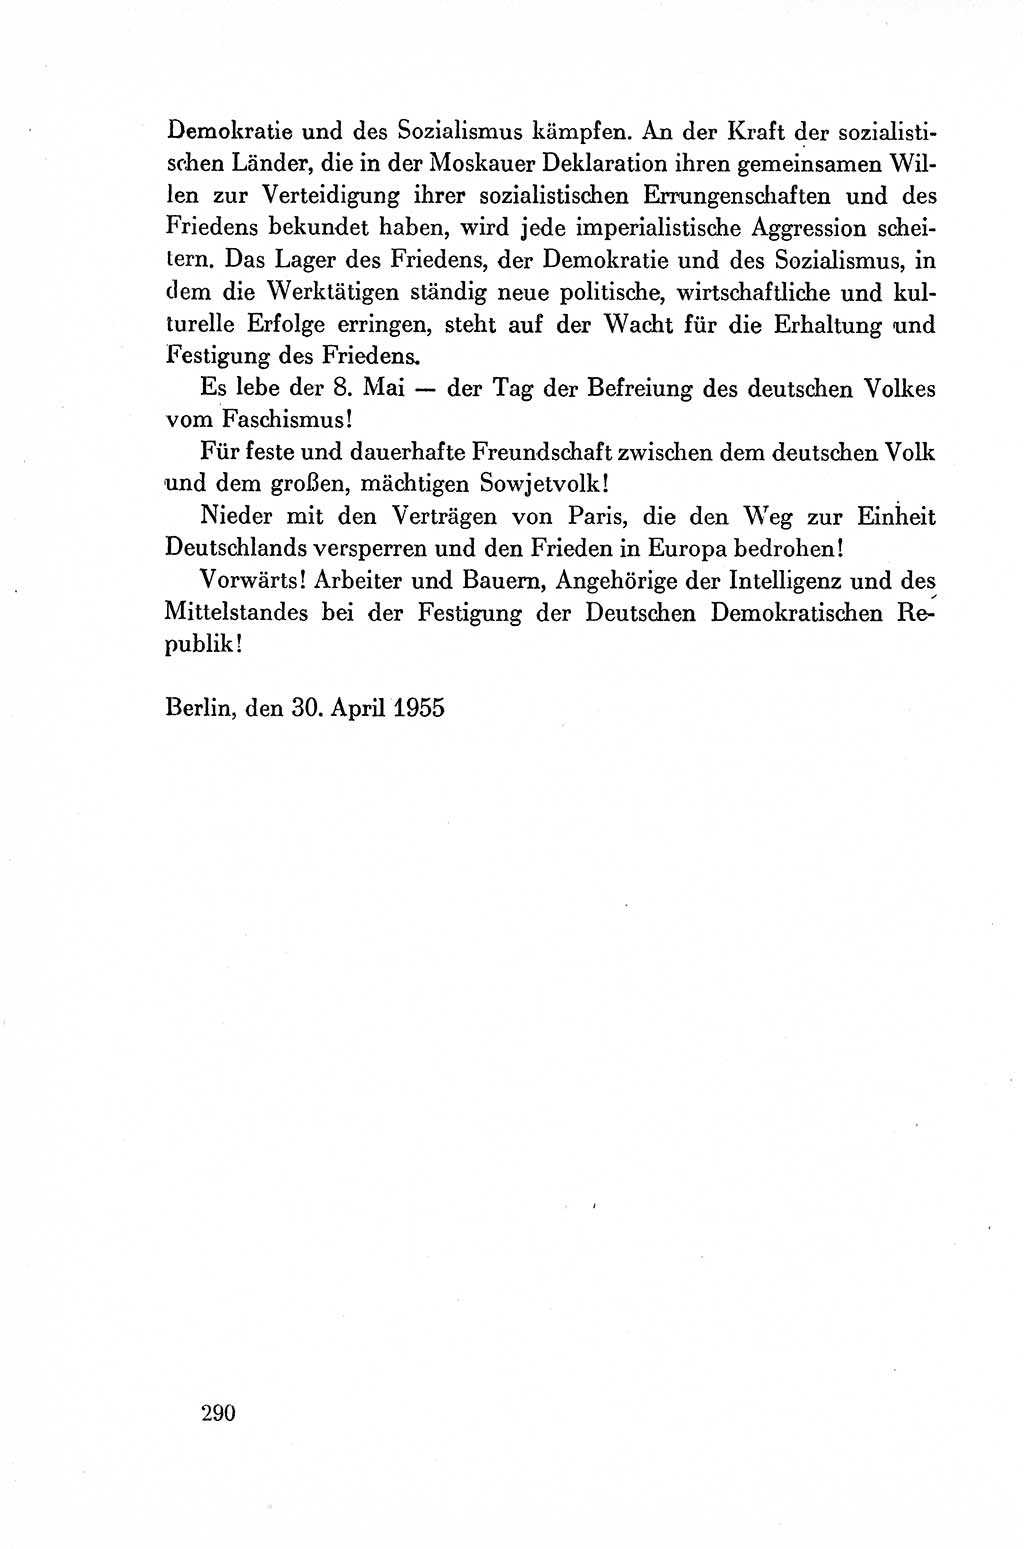 Dokumente der Sozialistischen Einheitspartei Deutschlands (SED) [Deutsche Demokratische Republik (DDR)] 1954-1955, Seite 290 (Dok. SED DDR 1954-1955, S. 290)